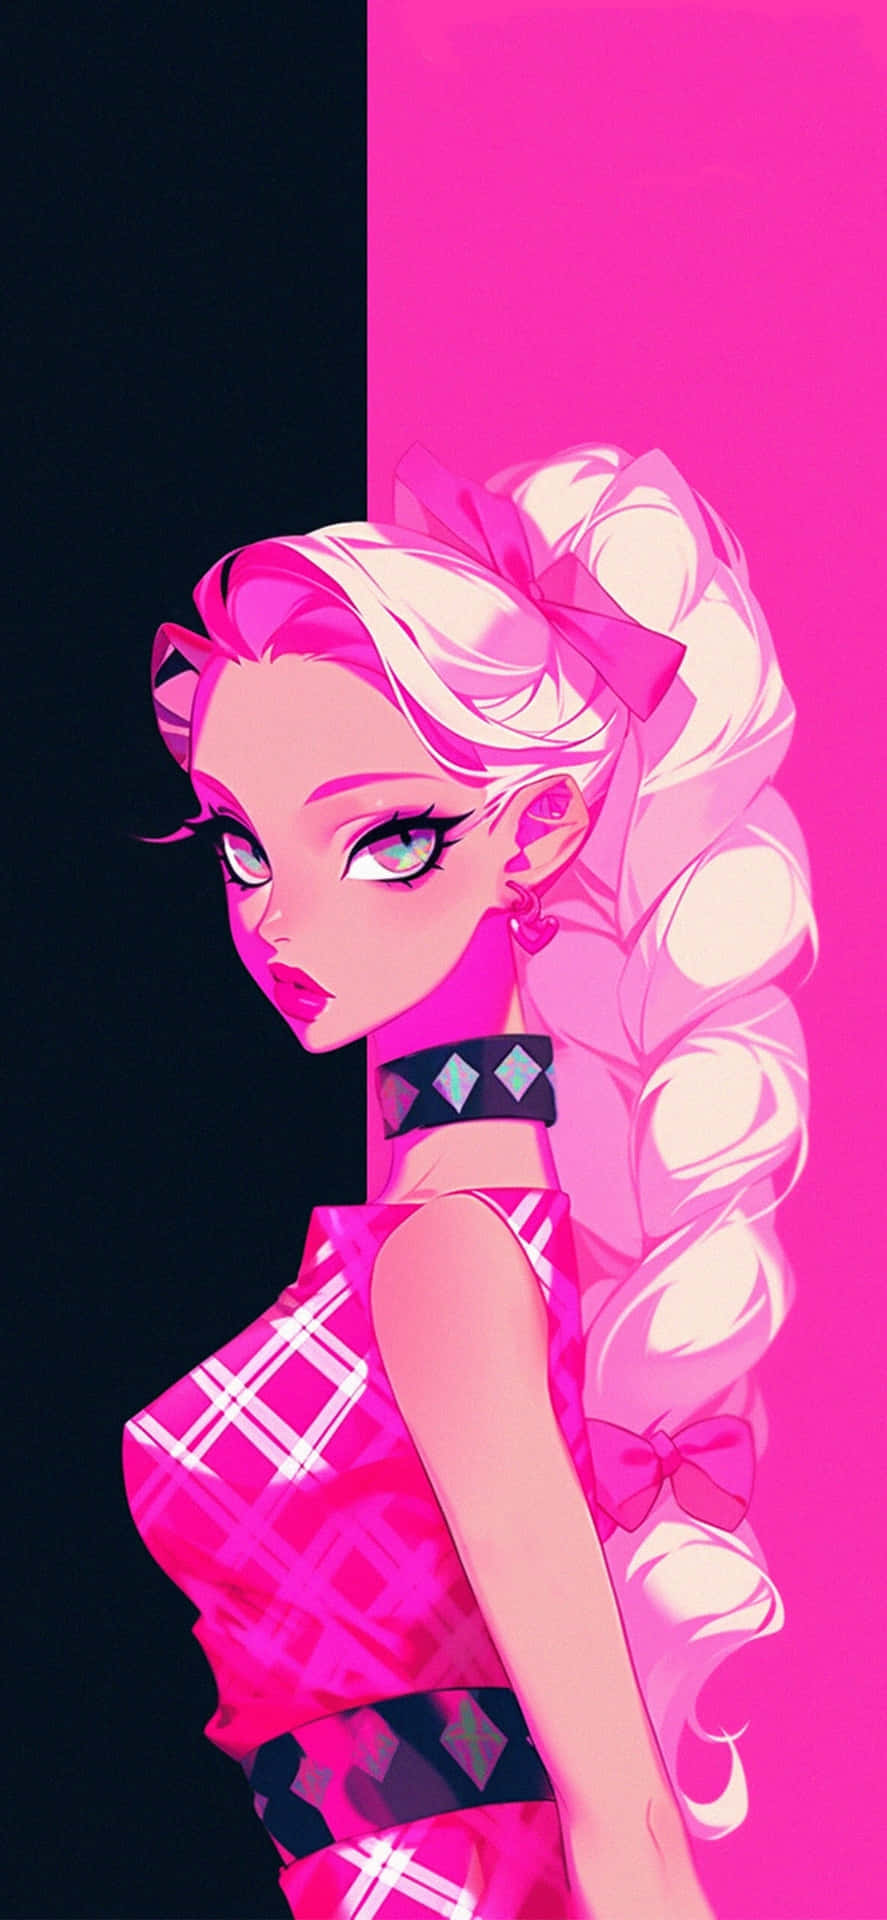 Preppy Pink Aesthetic Girl.jpg Wallpaper